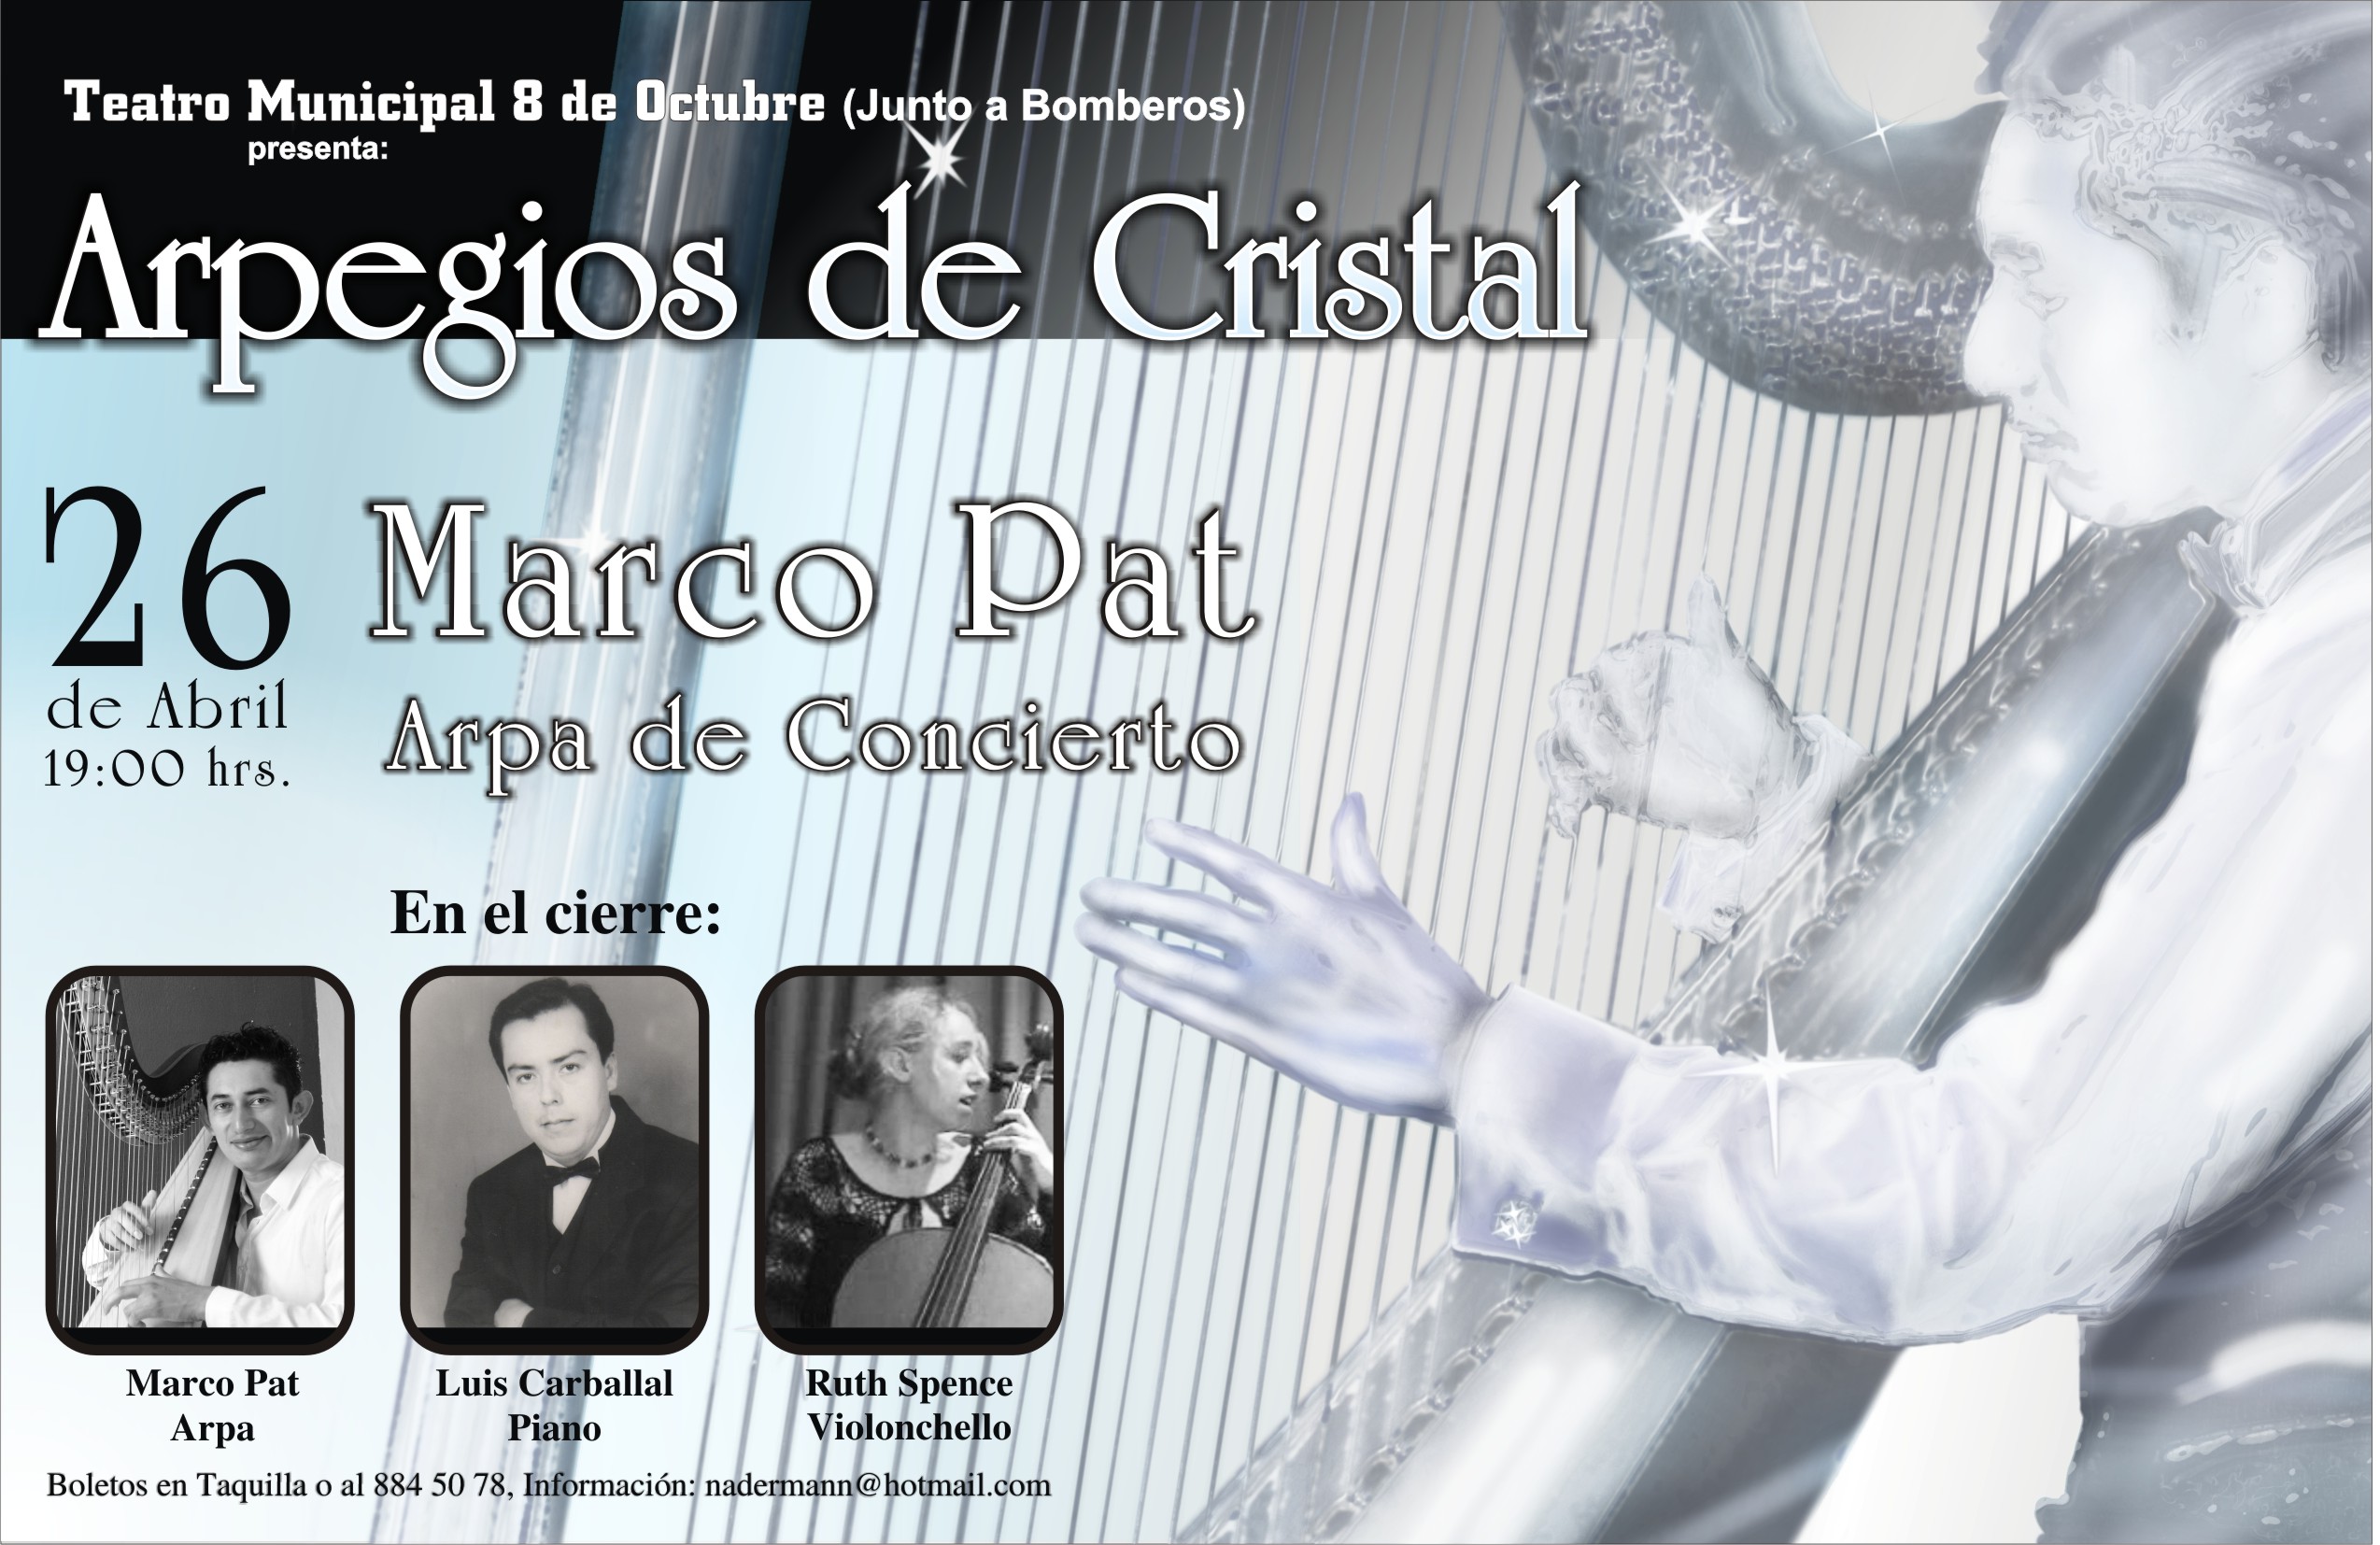 Harp Piano Violin Cello – Concert Sunday in Cancun